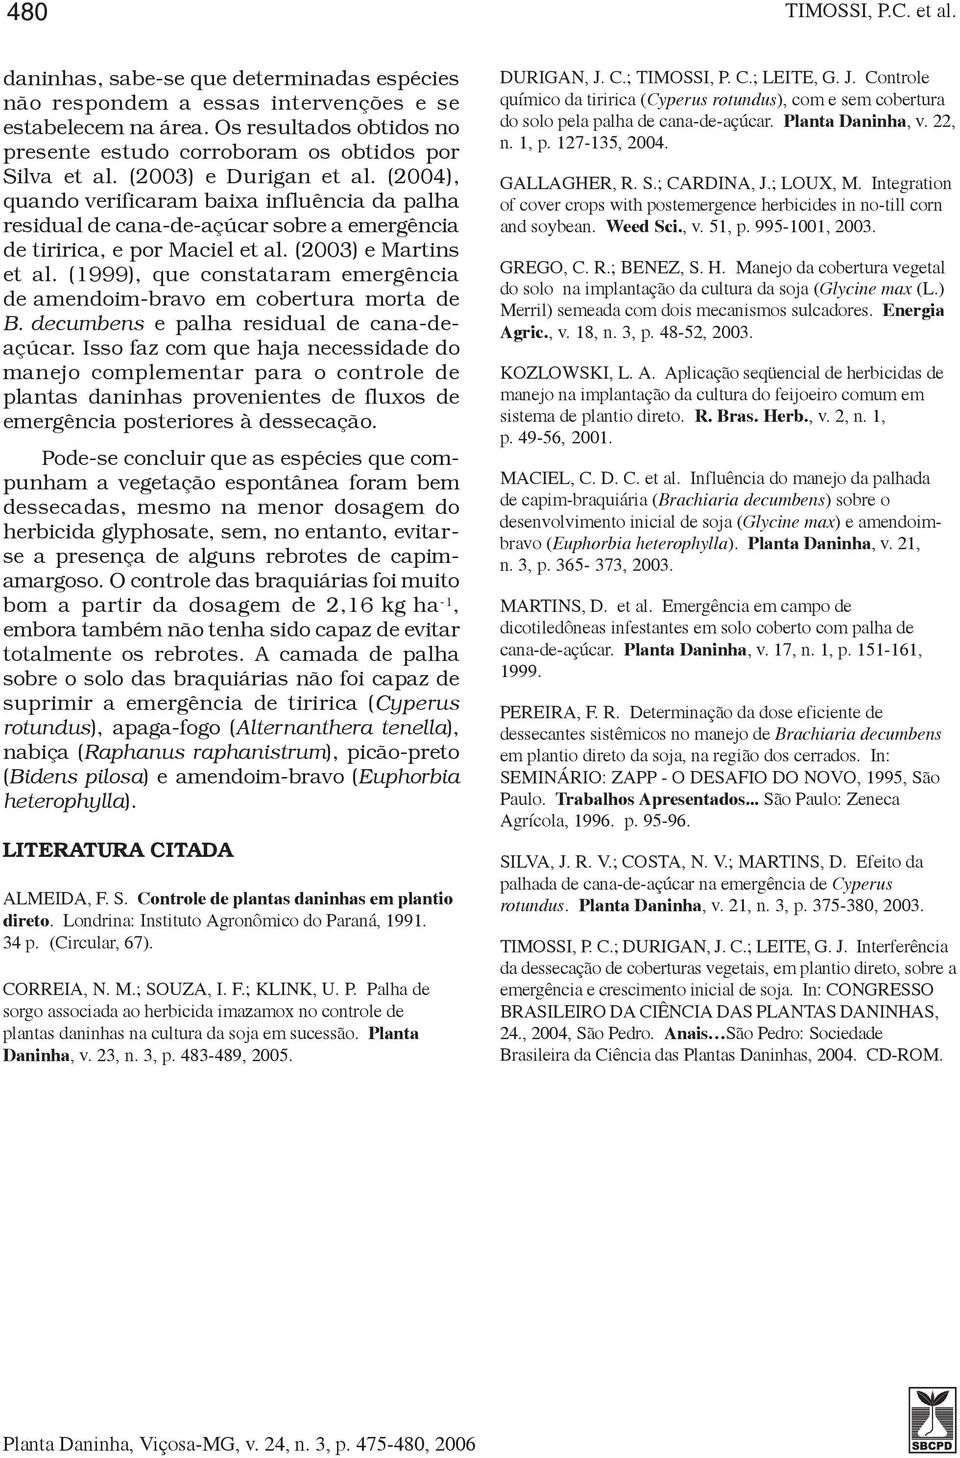 (2004), quando verificaram baixa influência da palha residual de cana-de-açúcar sobre a emergência de tiririca, e por Maciel et al. (2003) e Martins et al.